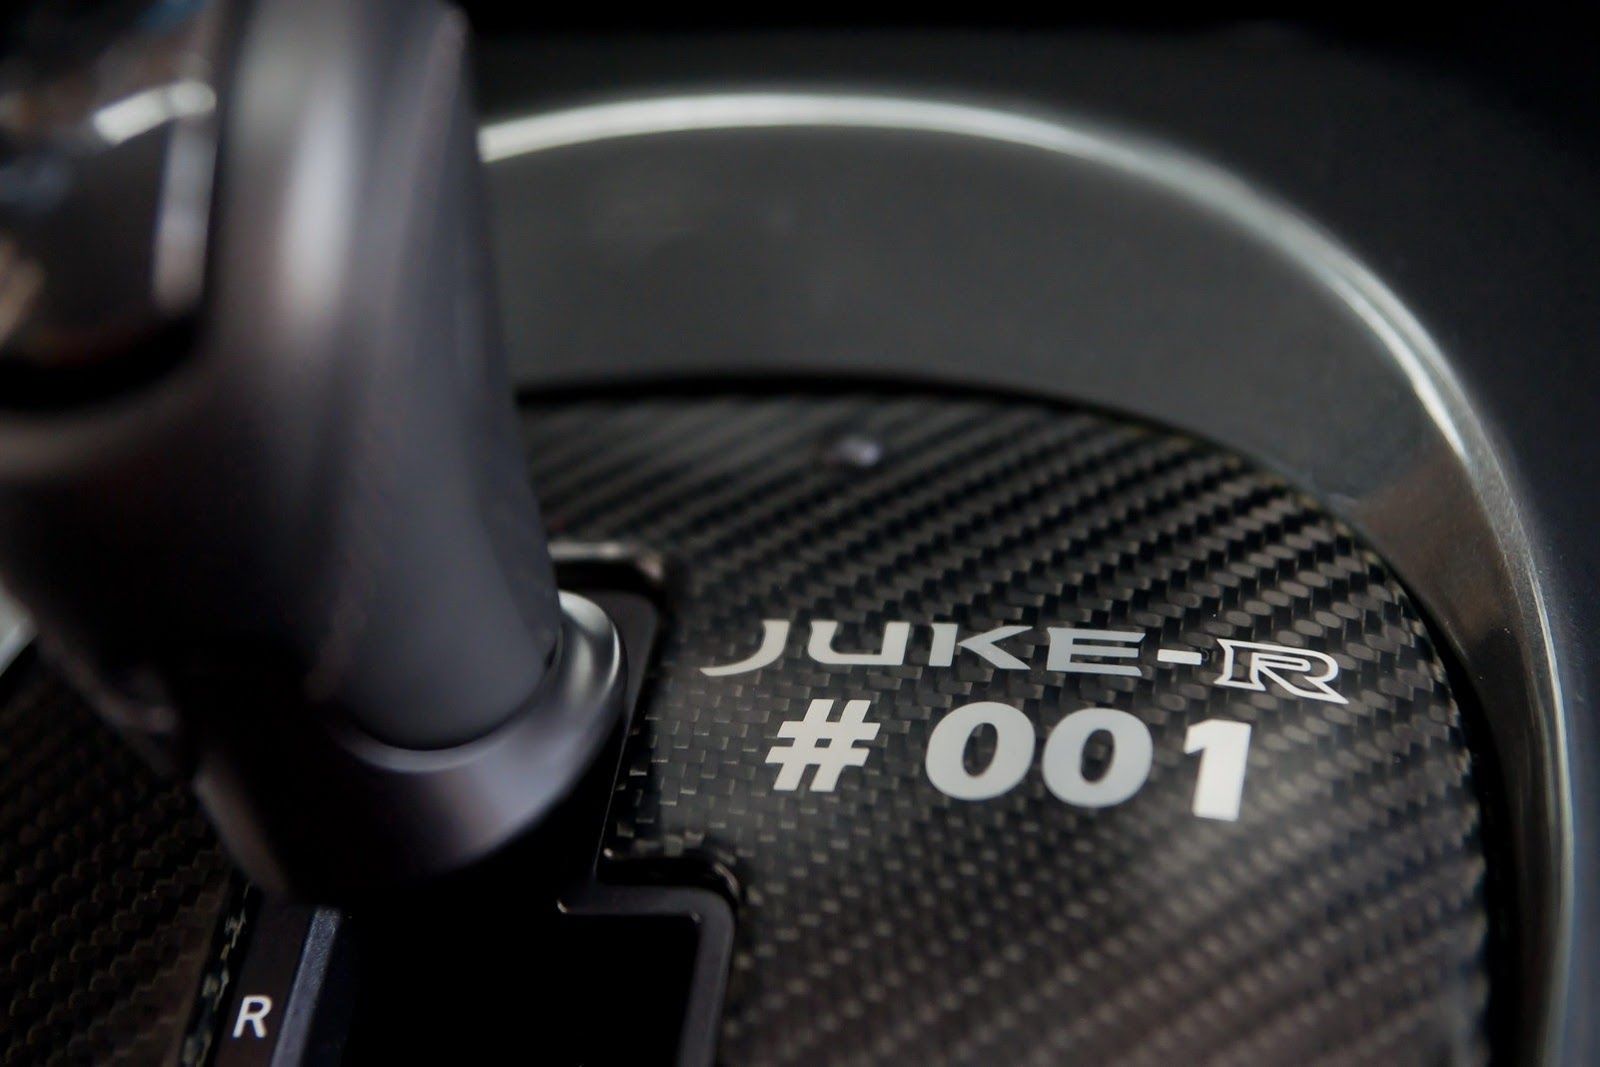 2013 Nissan Juke-R #001